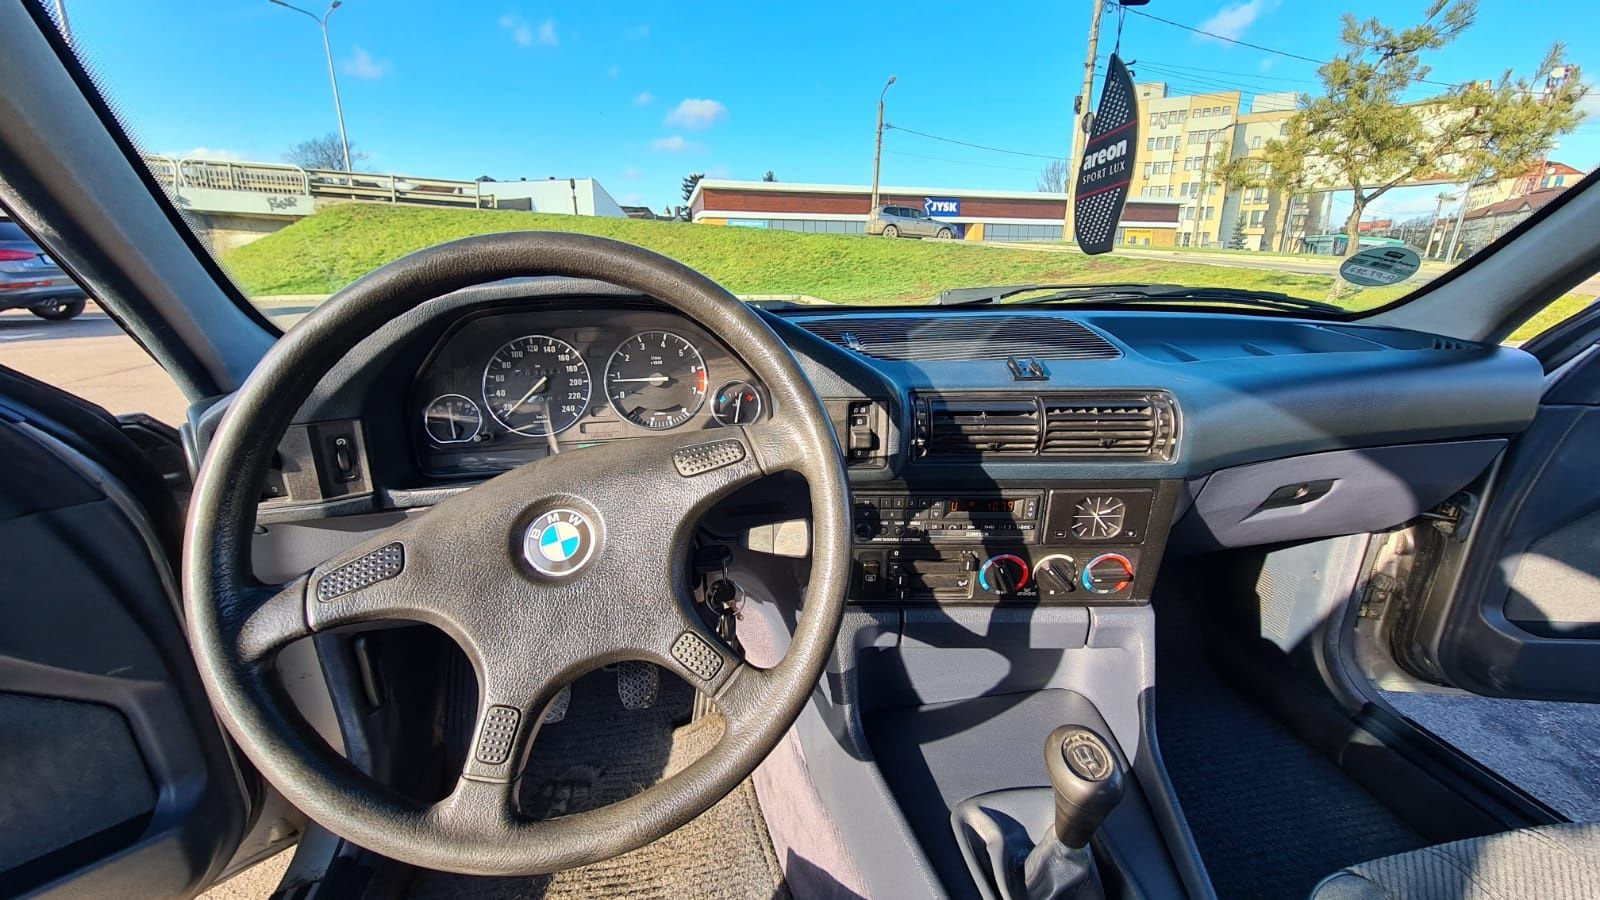 BMW E34 1988 520i